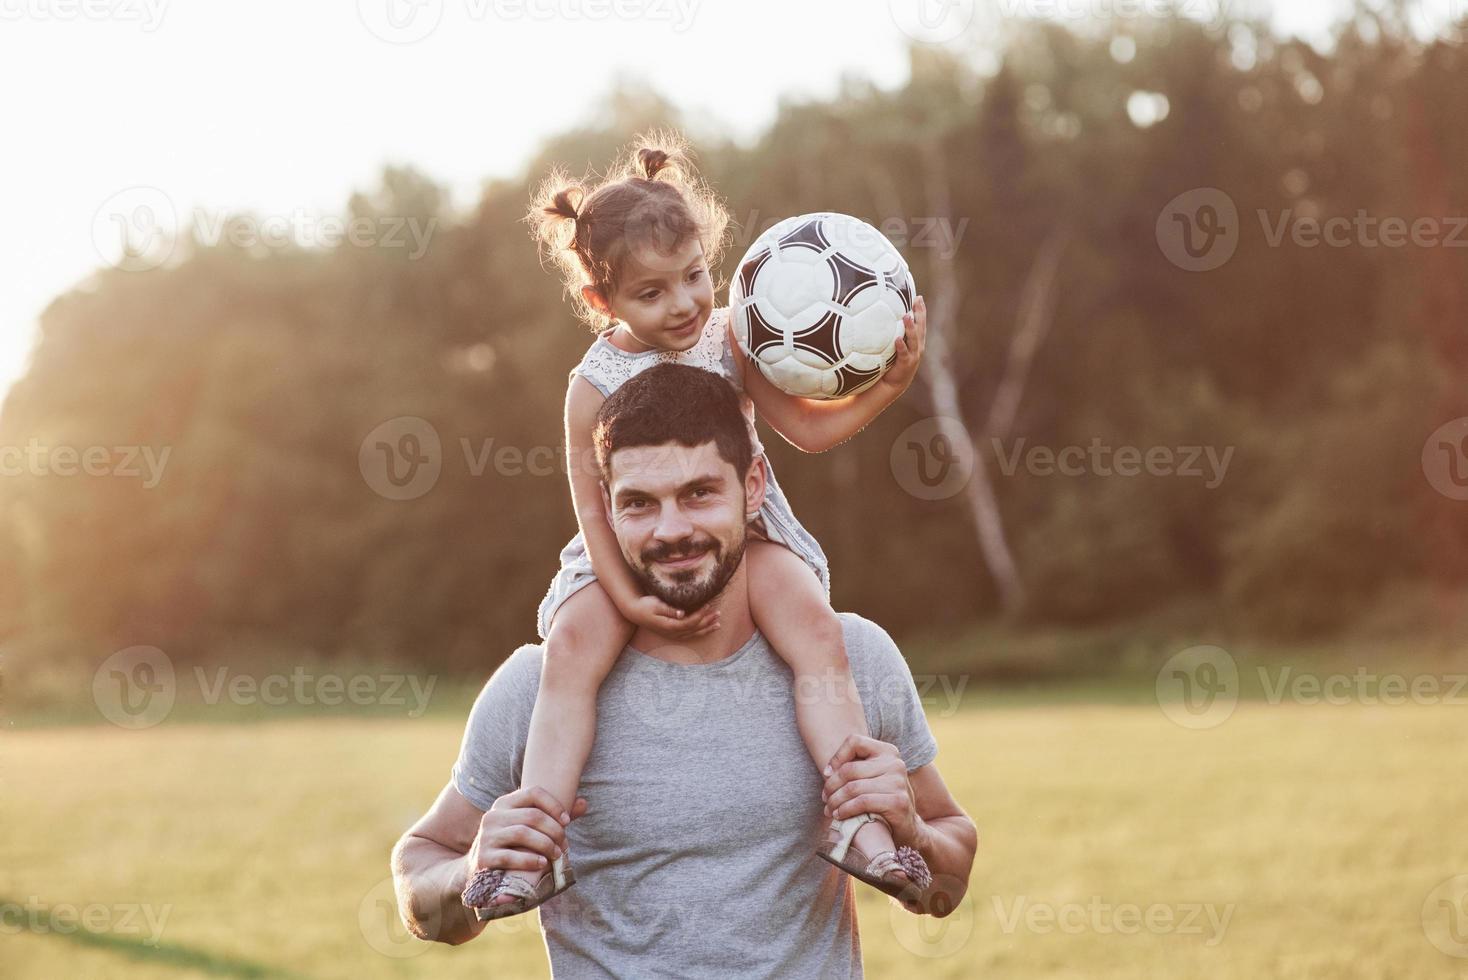 ren lycka. foto av pappa med sin dotter vid vackert gräs och skog i bakgrunden